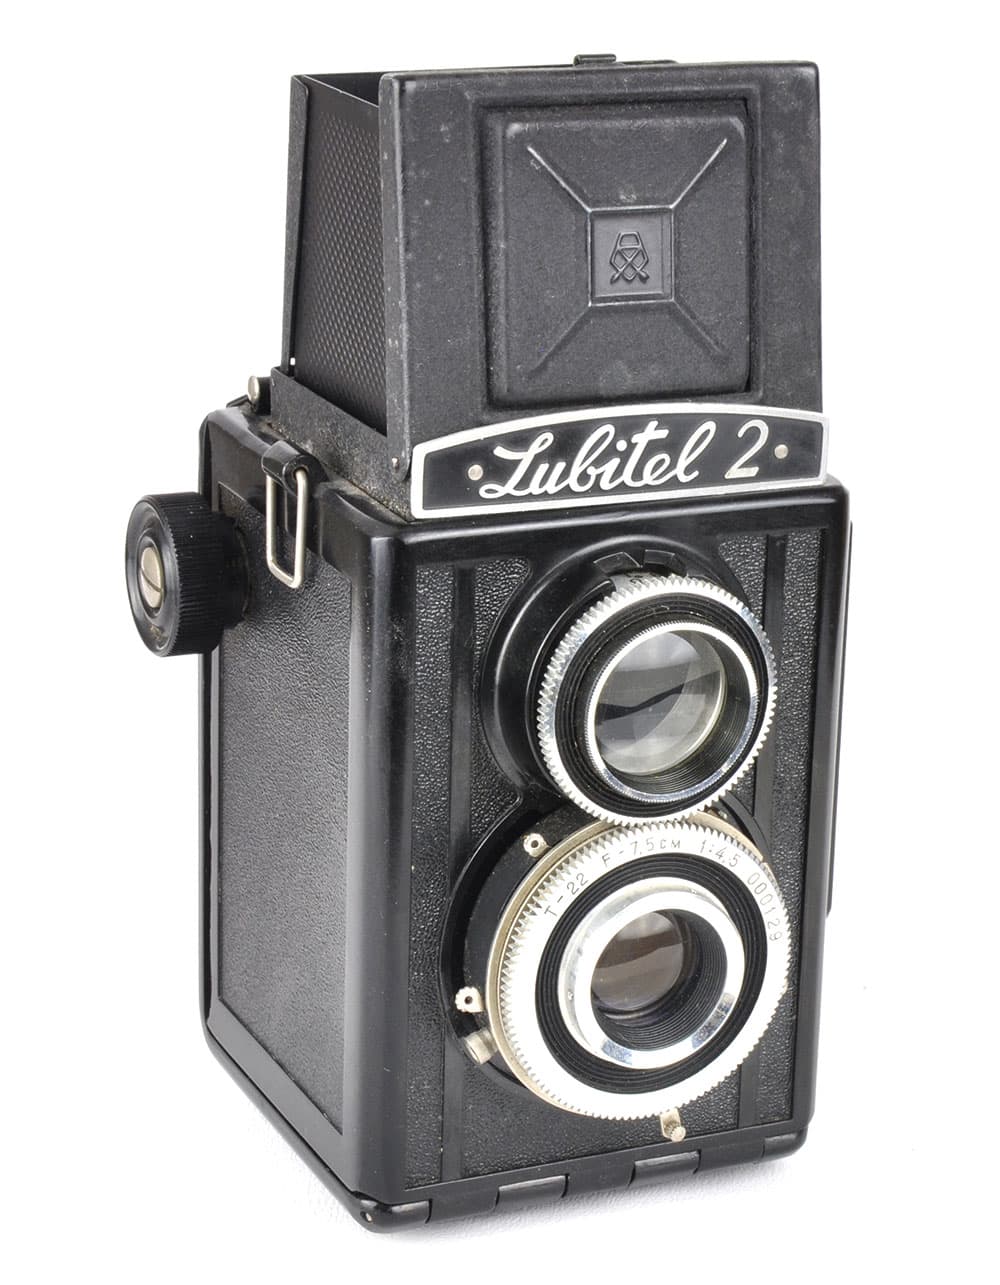 second-hand film cameras Lubitel 2